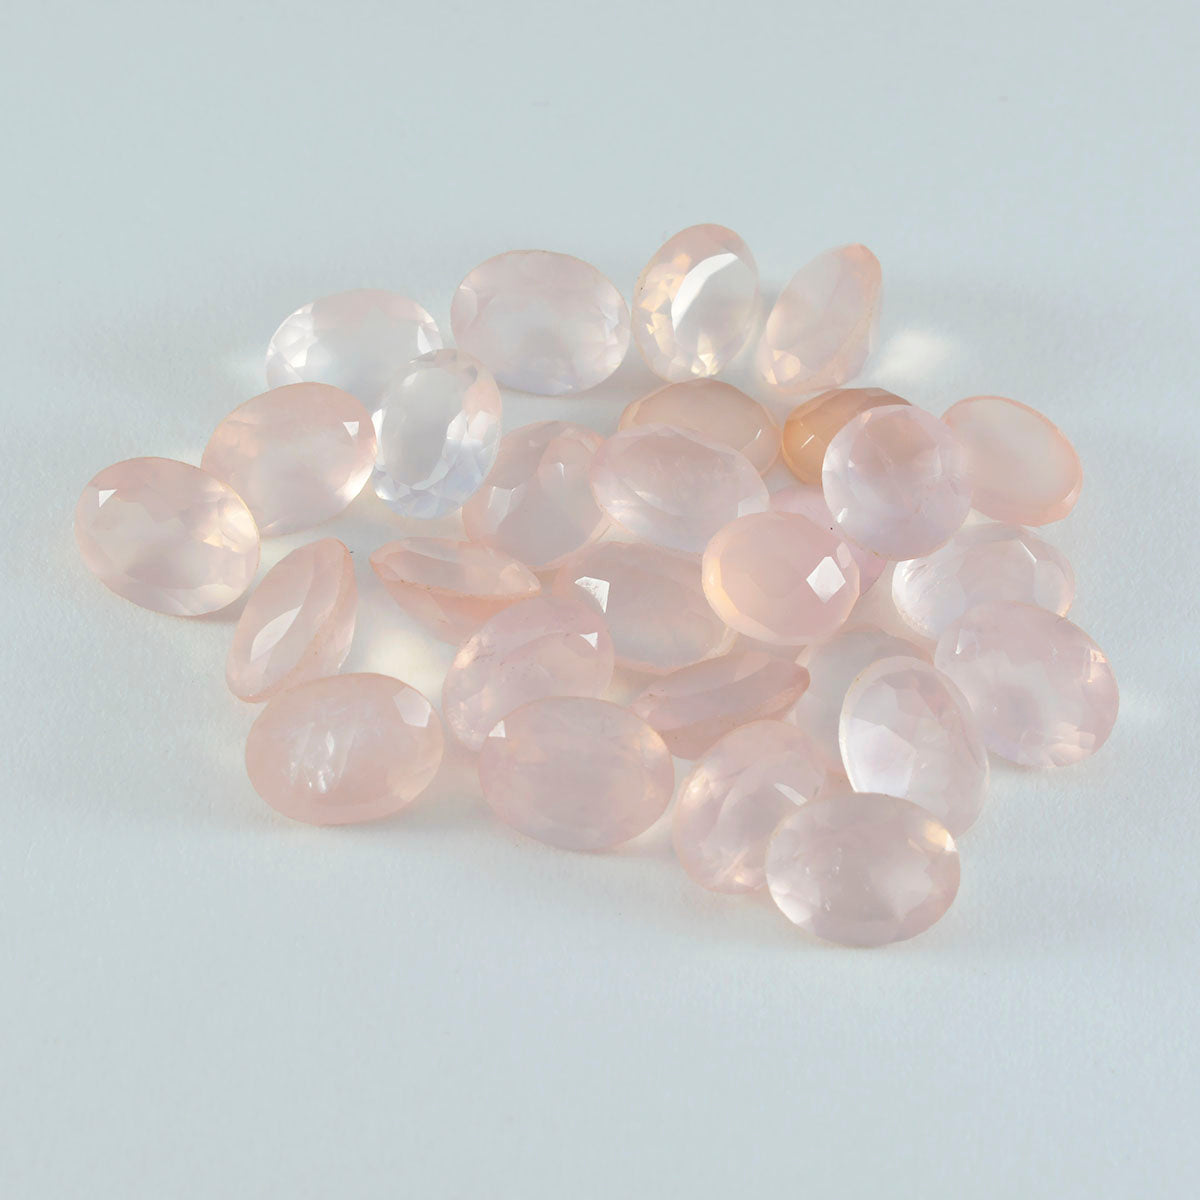 riyogems 1шт розовый кварц ограненный 6x8 мм овальной формы красивые качественные камни